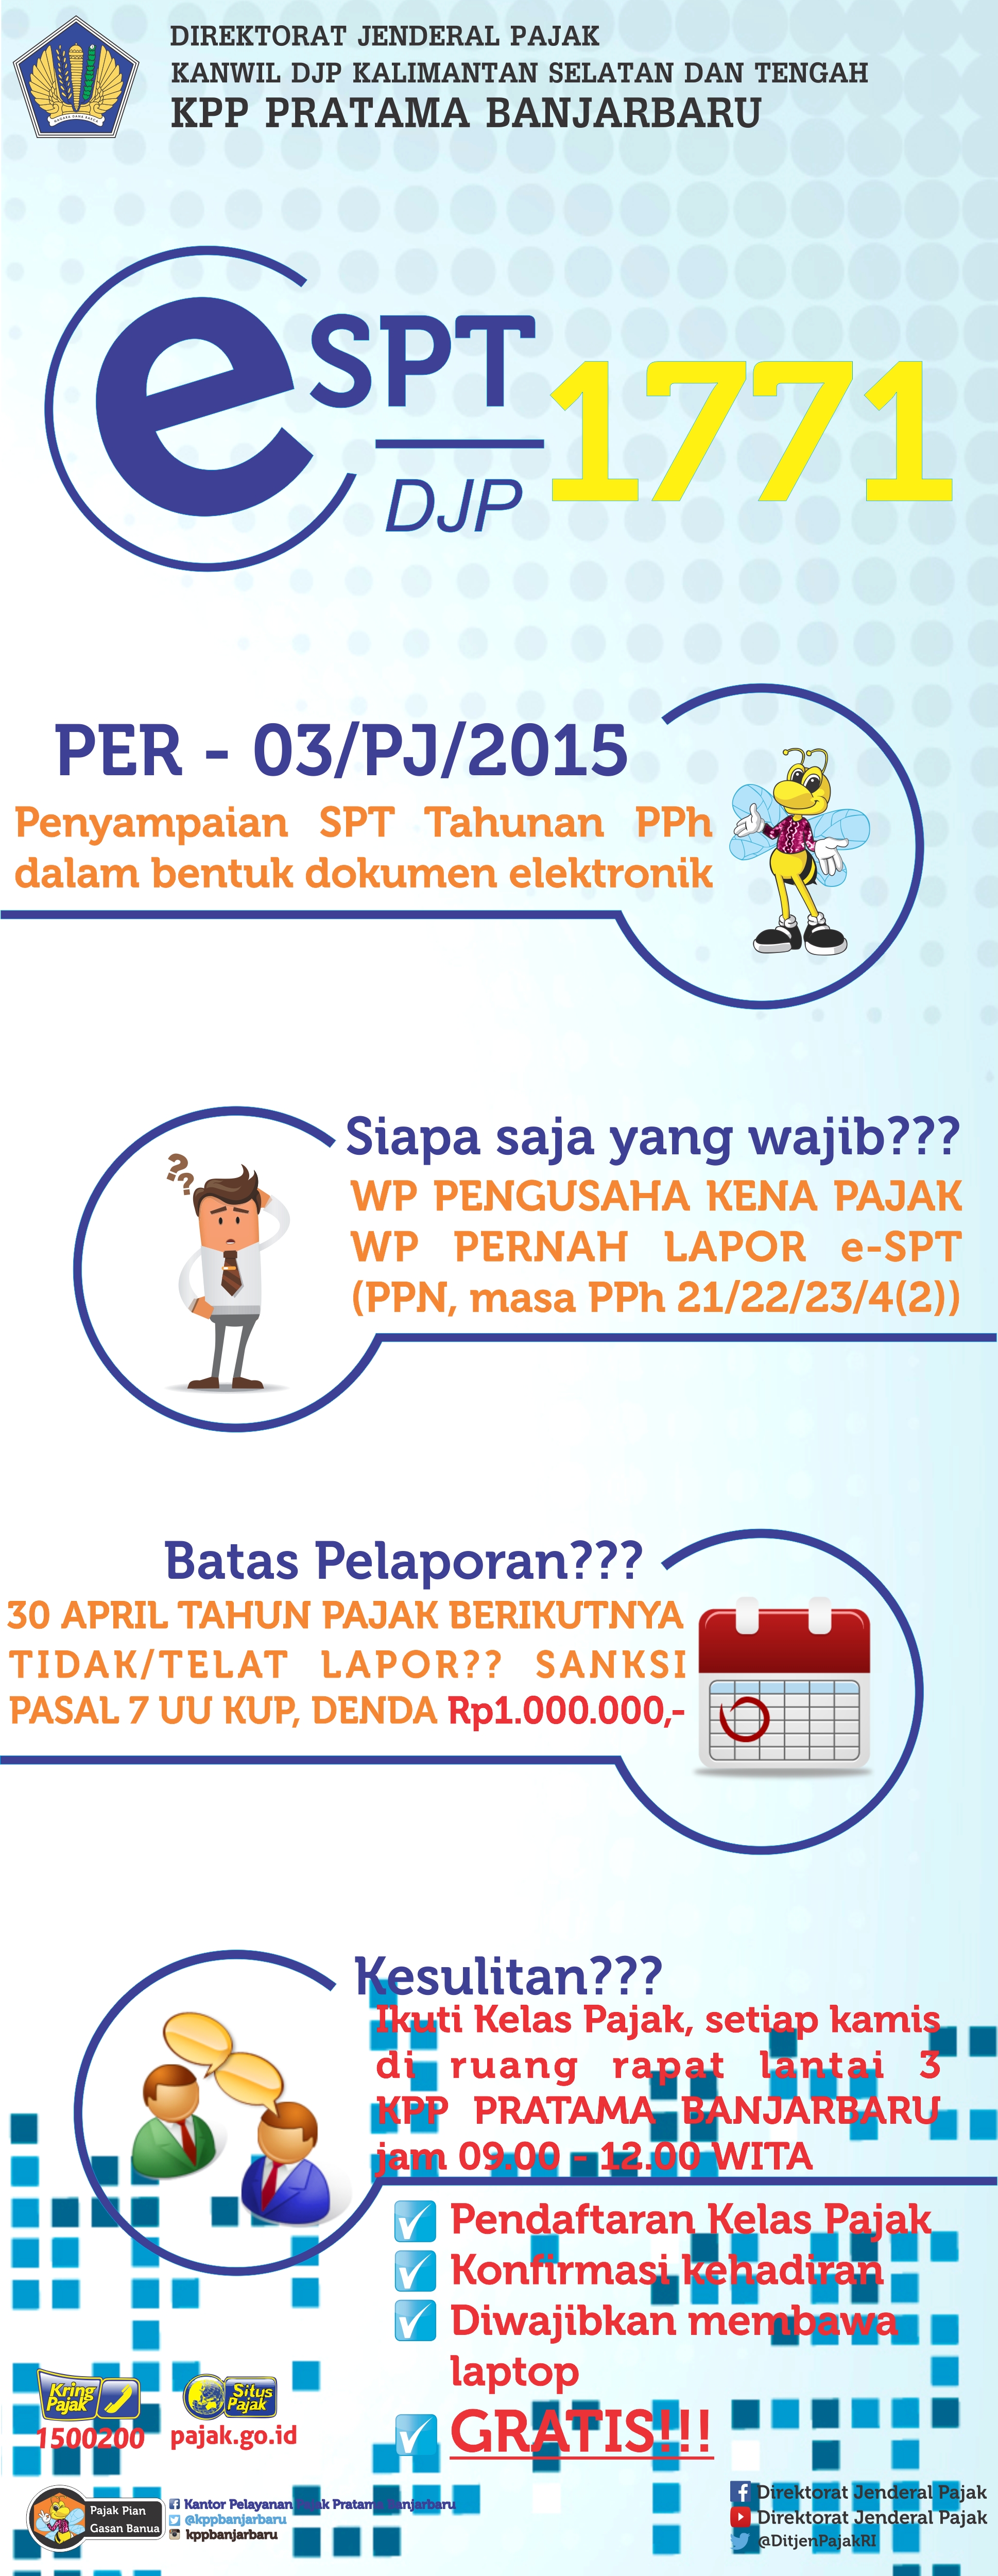 Kewajiban Pelaporan Spt Tahunan Pph Wajib Pajak Badan Secara Elektronik Kpp Pratama Banjarbaru